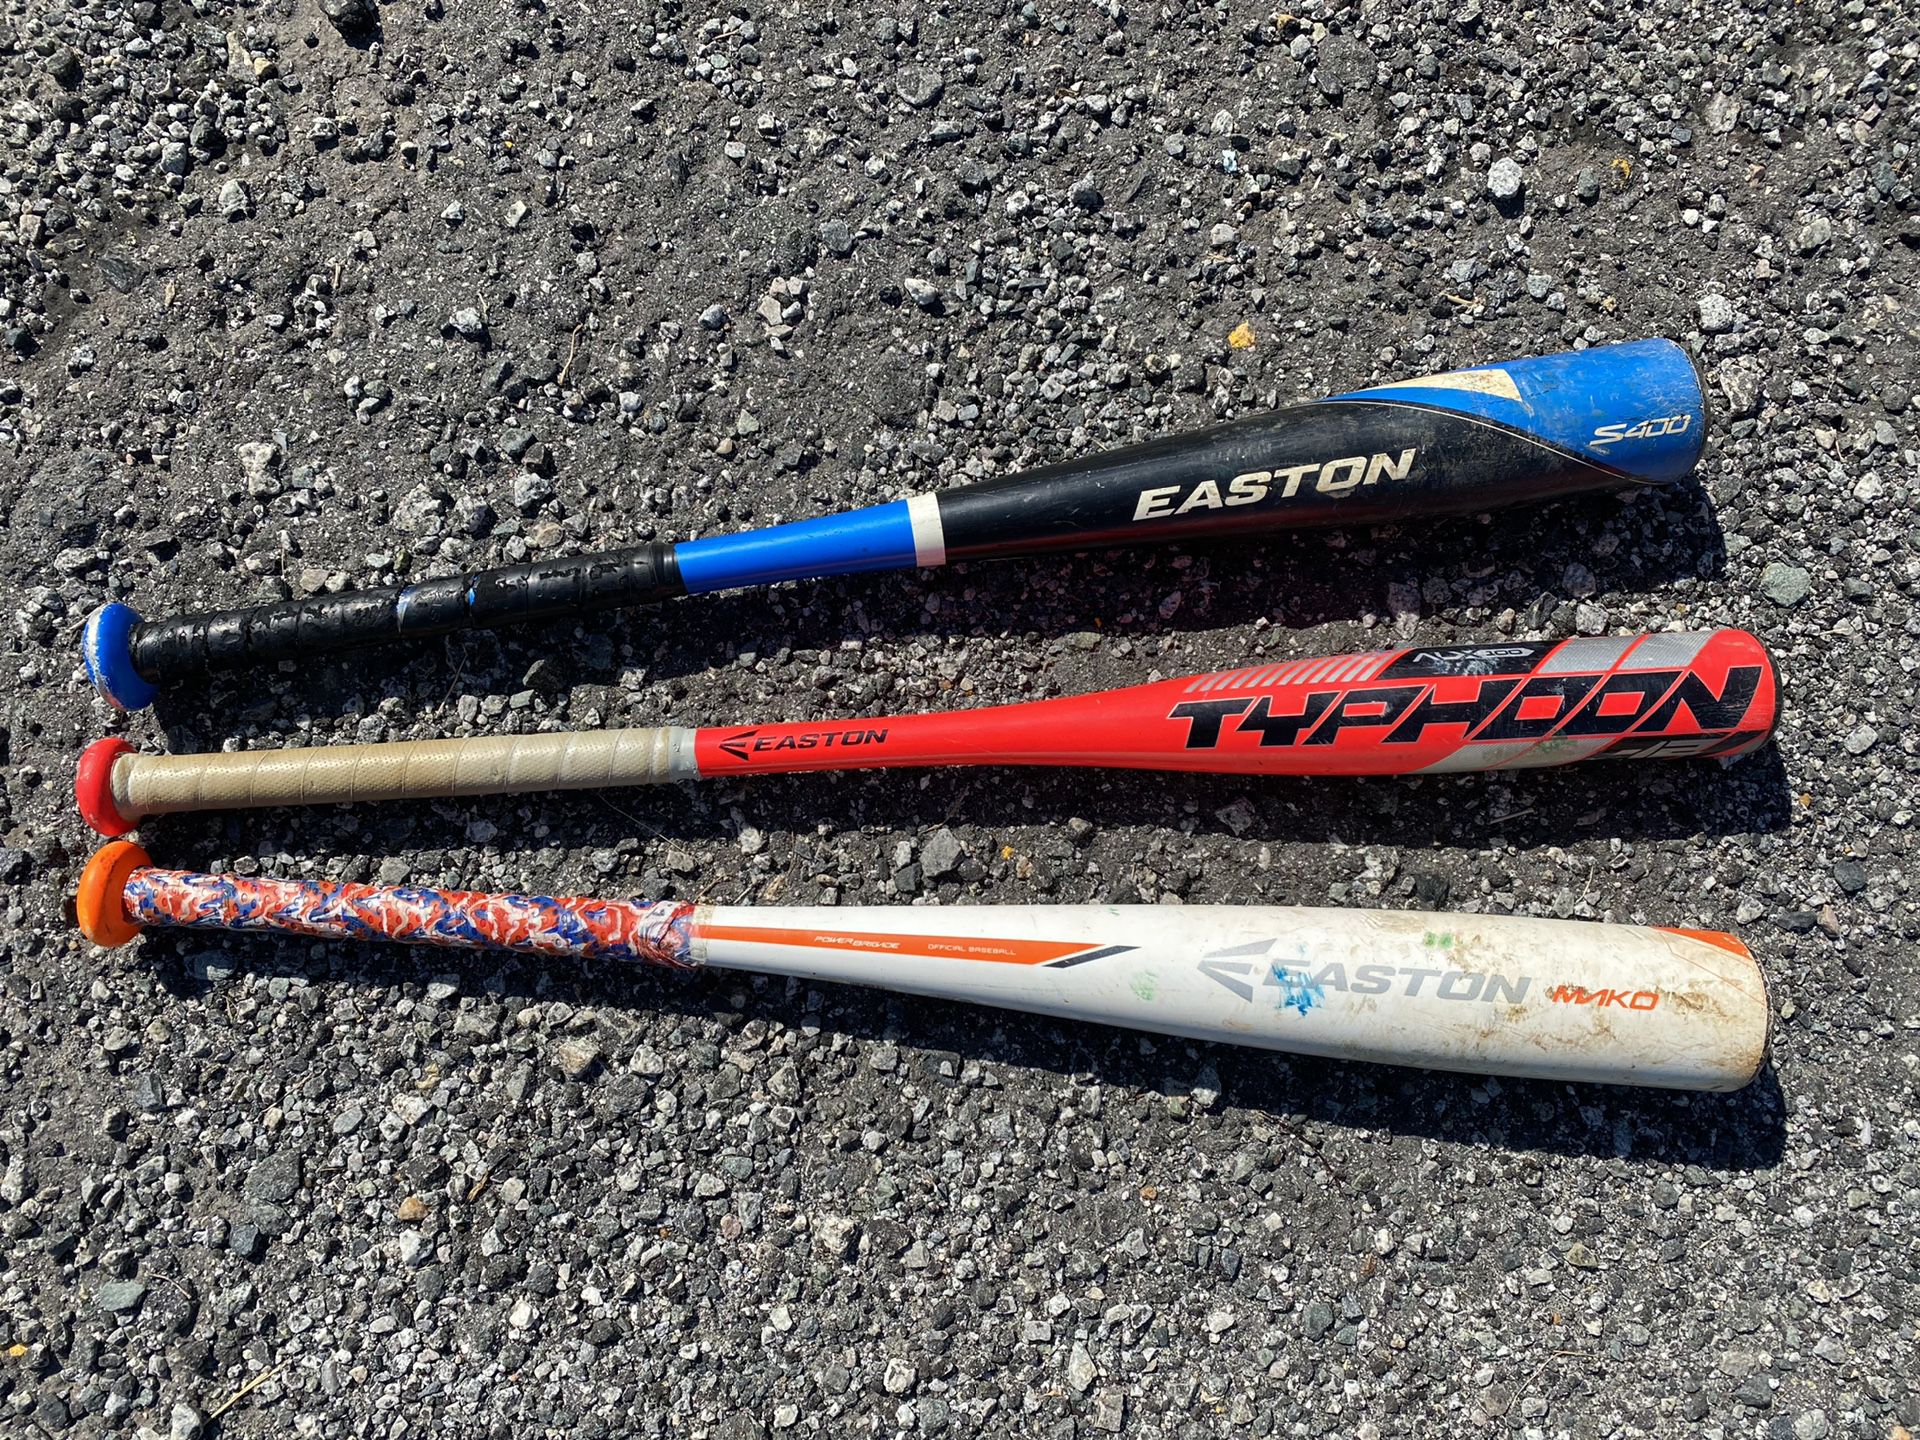 3 Easton Tee ball Little League Baseball Bats Mako Typhoon S400